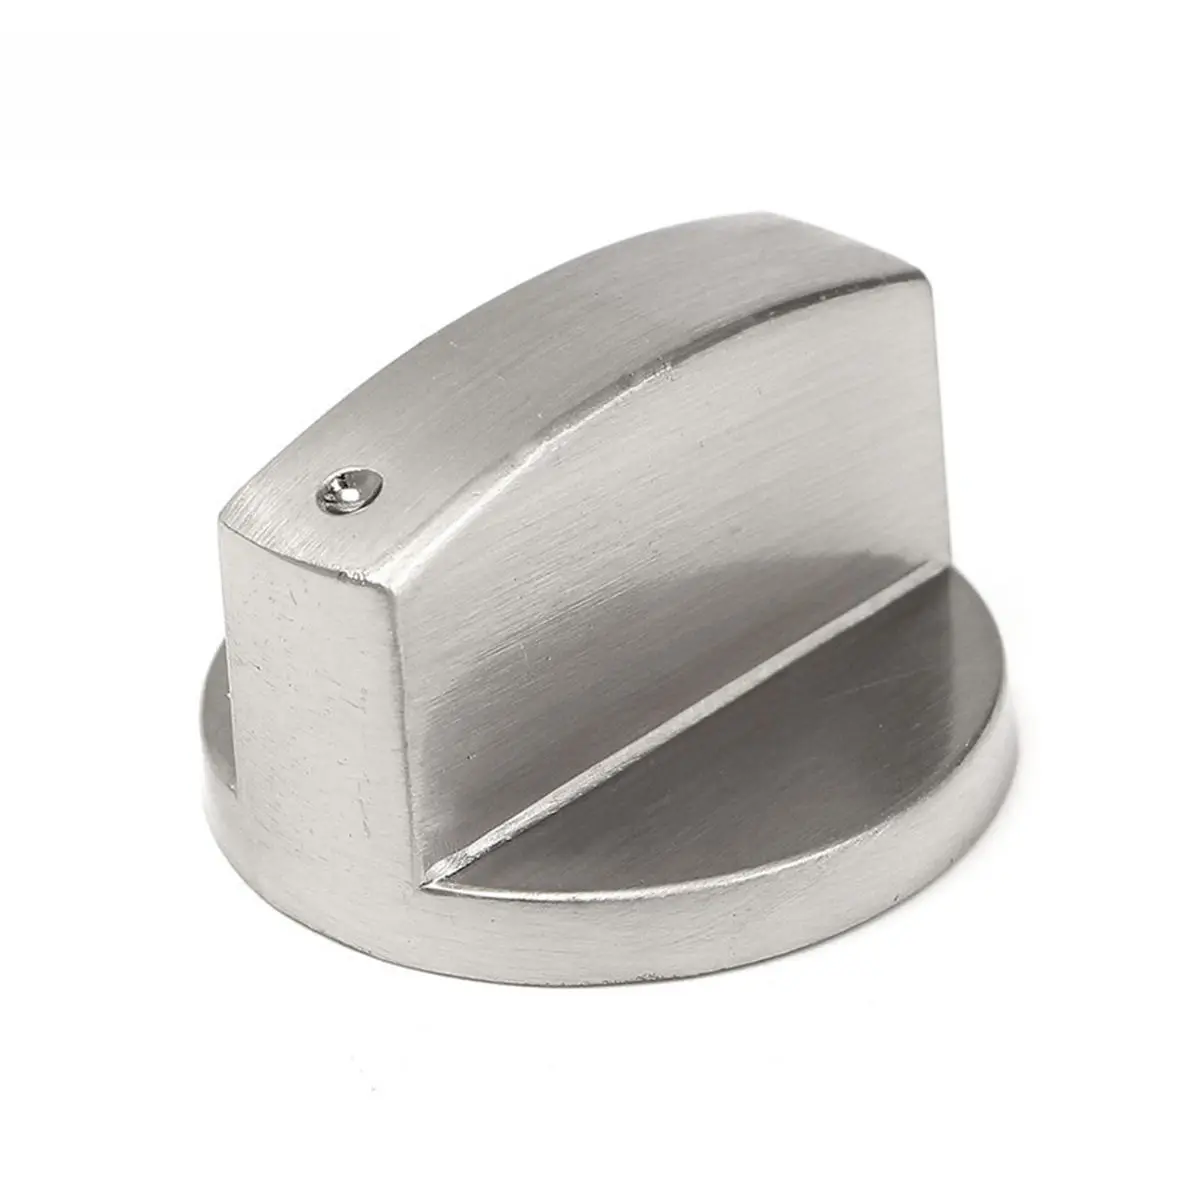 4 шт. 8 мм металлические серебристые ручки для плиты адаптеры для духовки поворотный переключатель для варочной поверхности замки для кухонной посуды